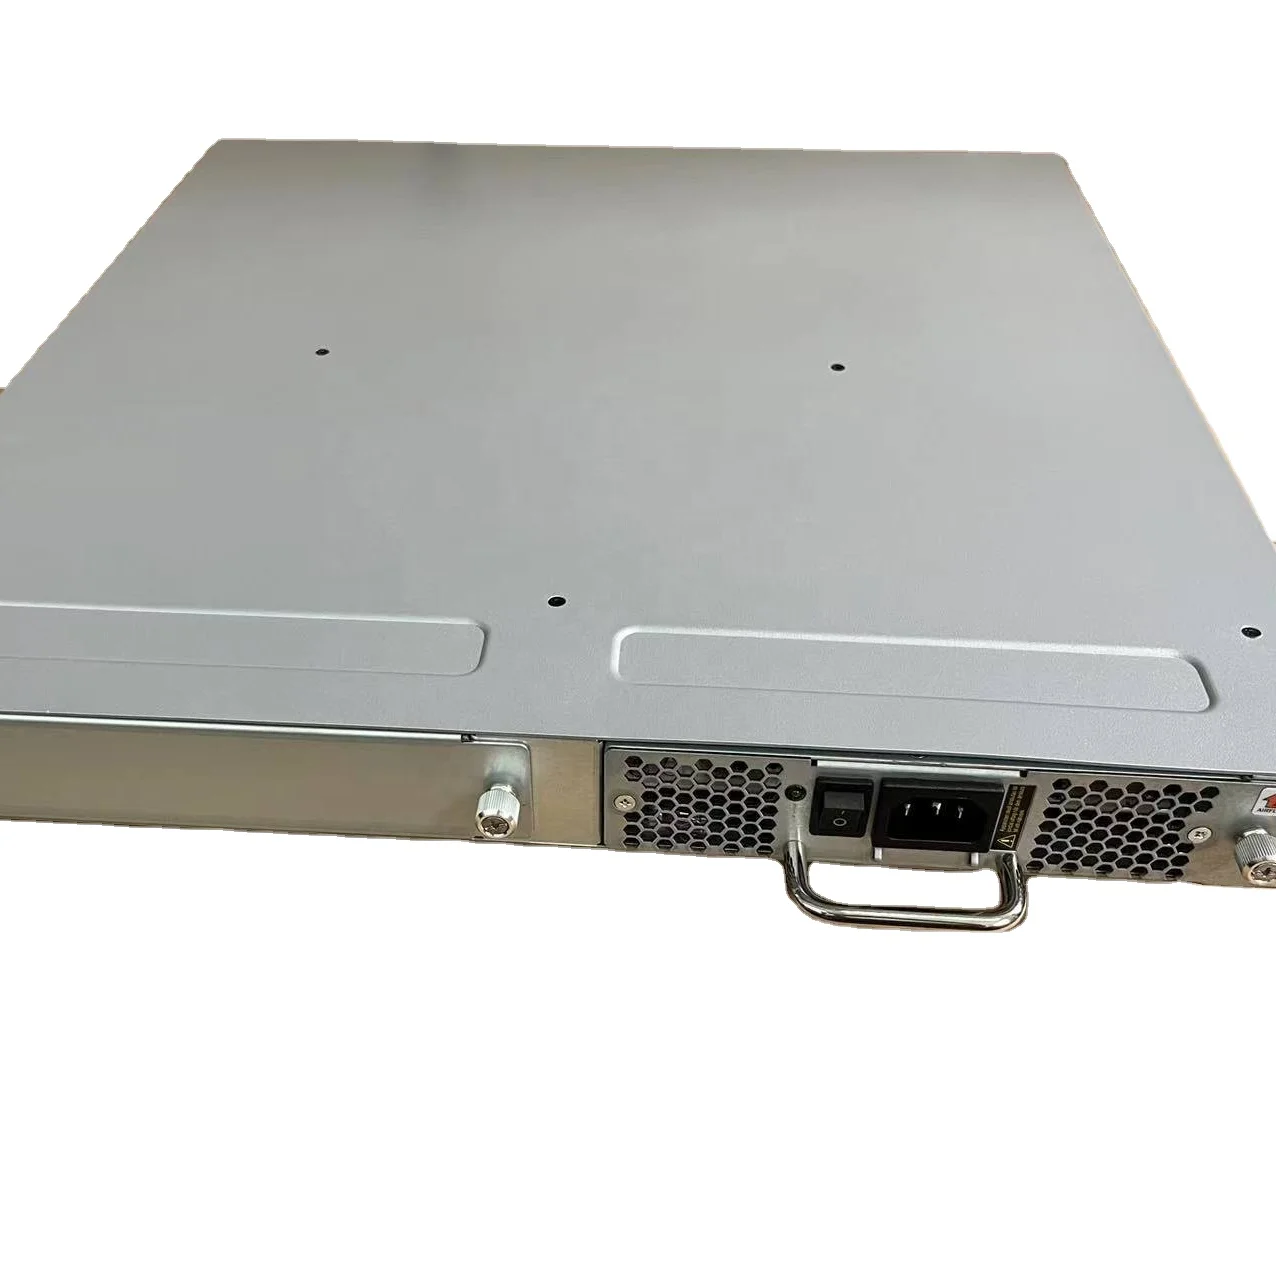 Dell EMC DS-6610 / Brocade G610 24-Port 32Gb Fibre Channel SAN Switch